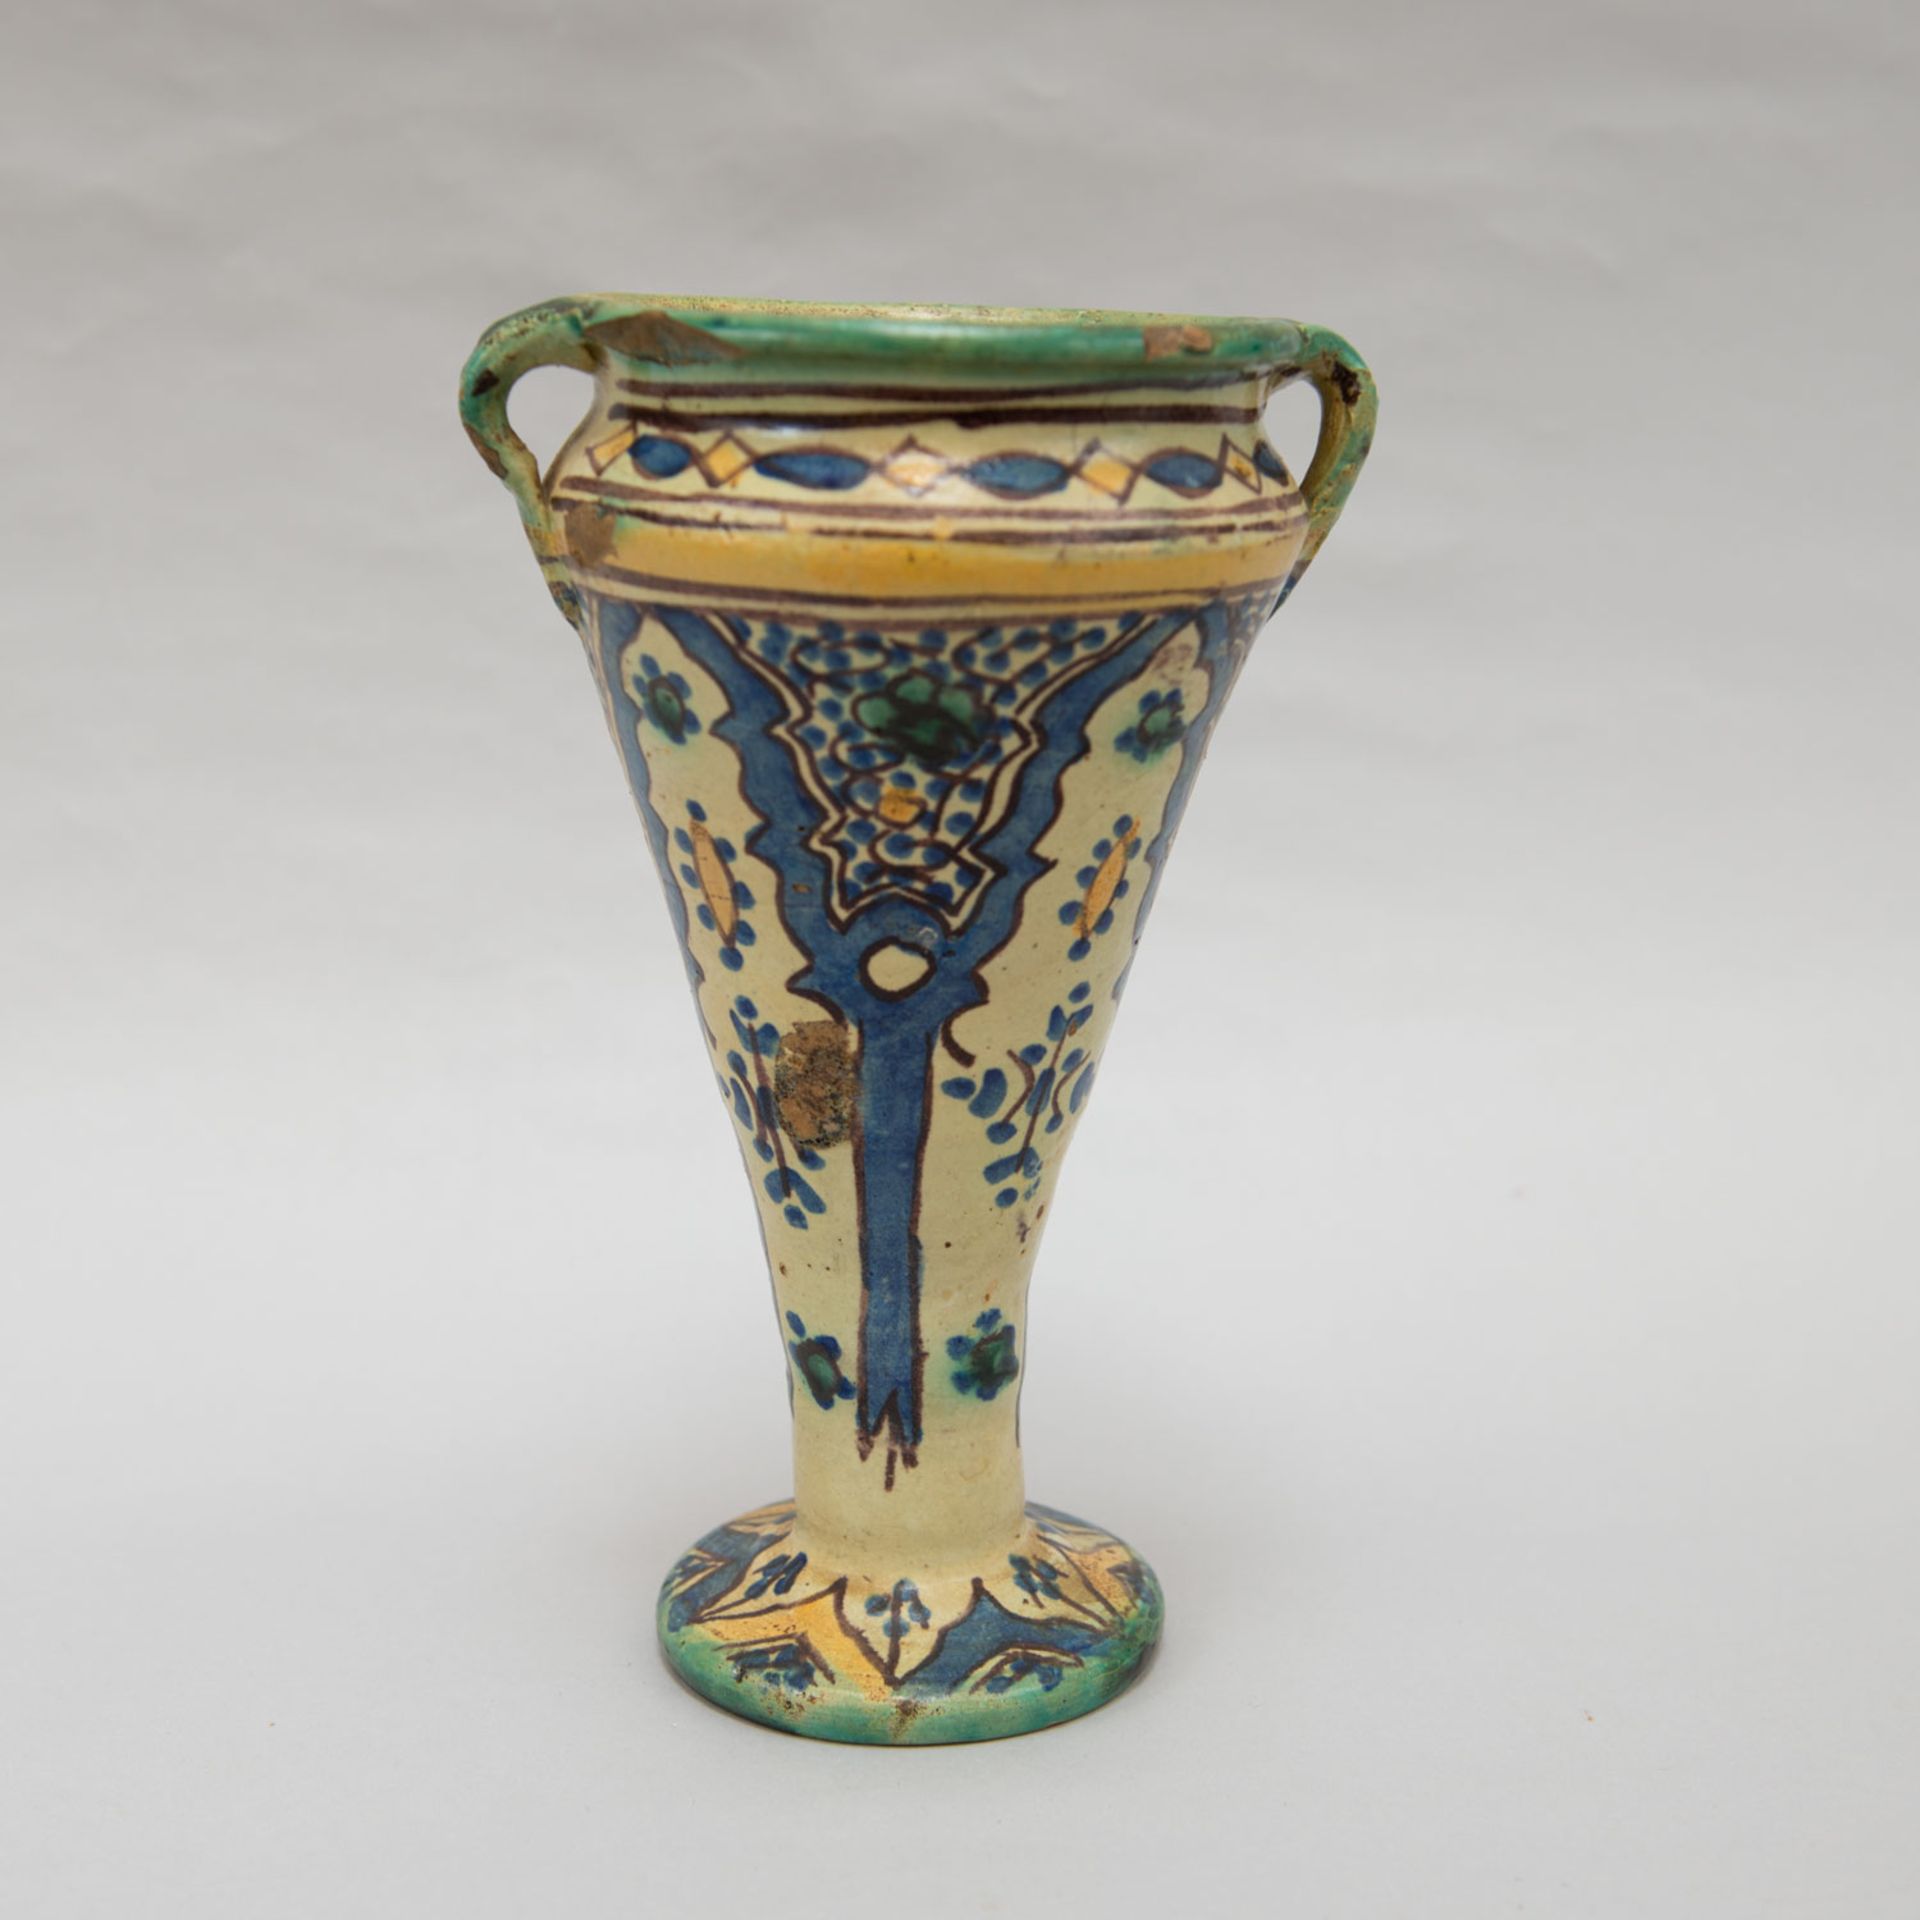 North African ceramic vase